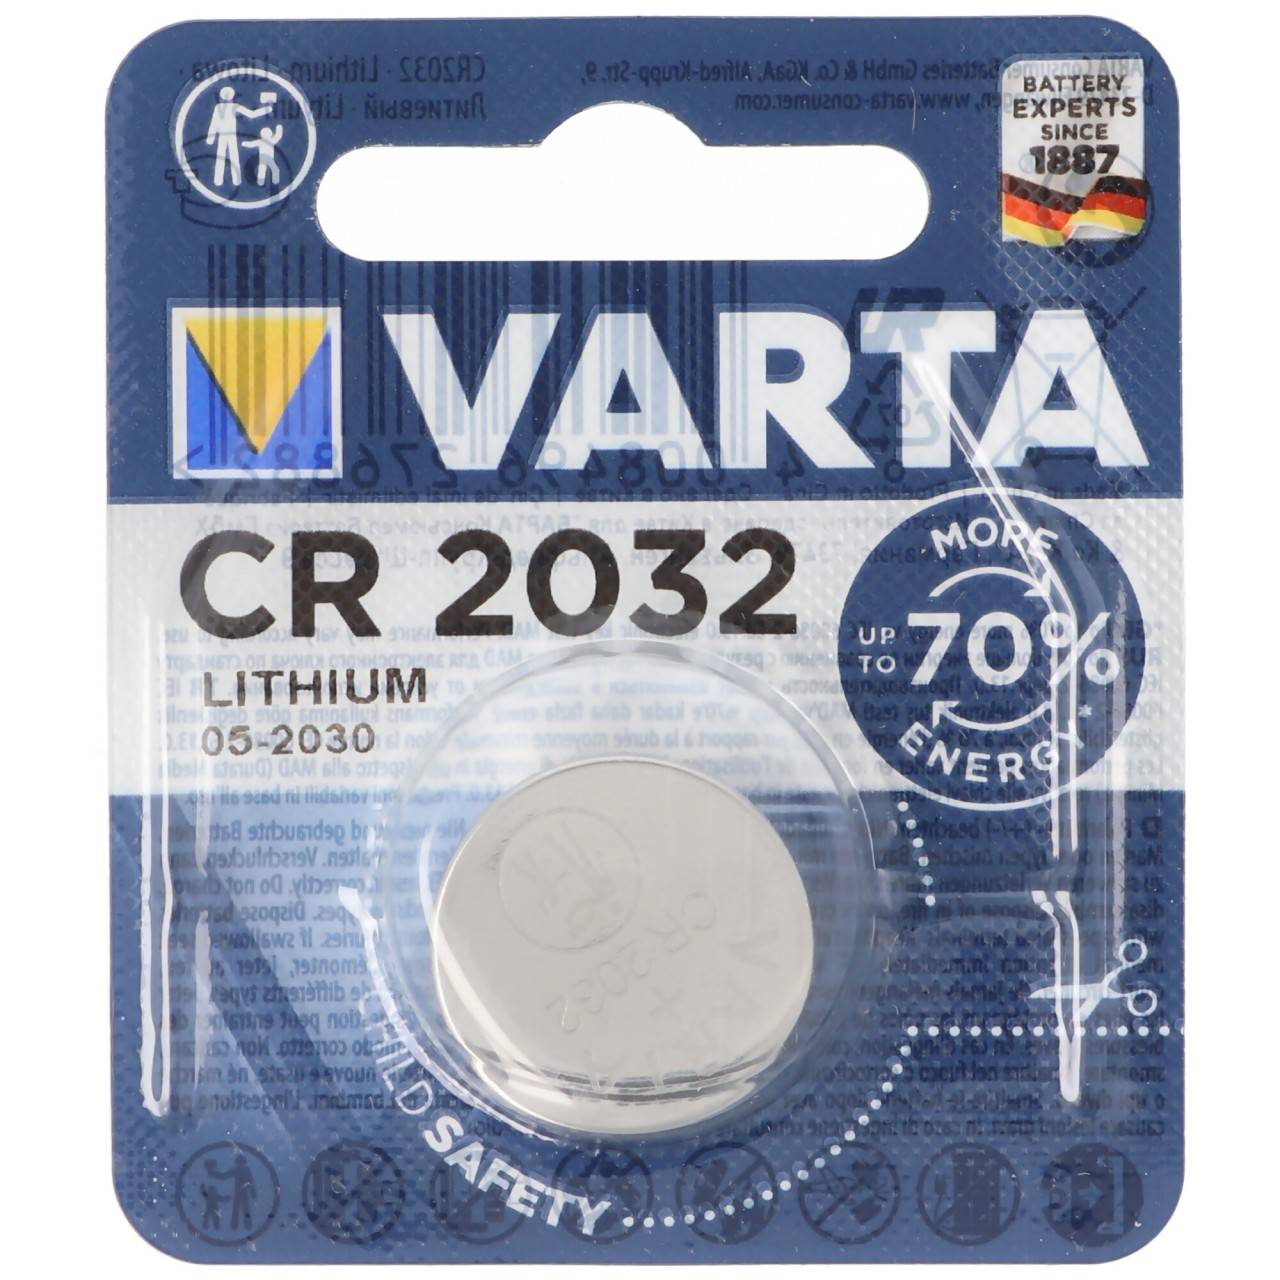 4 x Varta CR2032 DL2032 BR 2032 Knopfzellen Batterien 4 Stück NEU *aus 2021* 